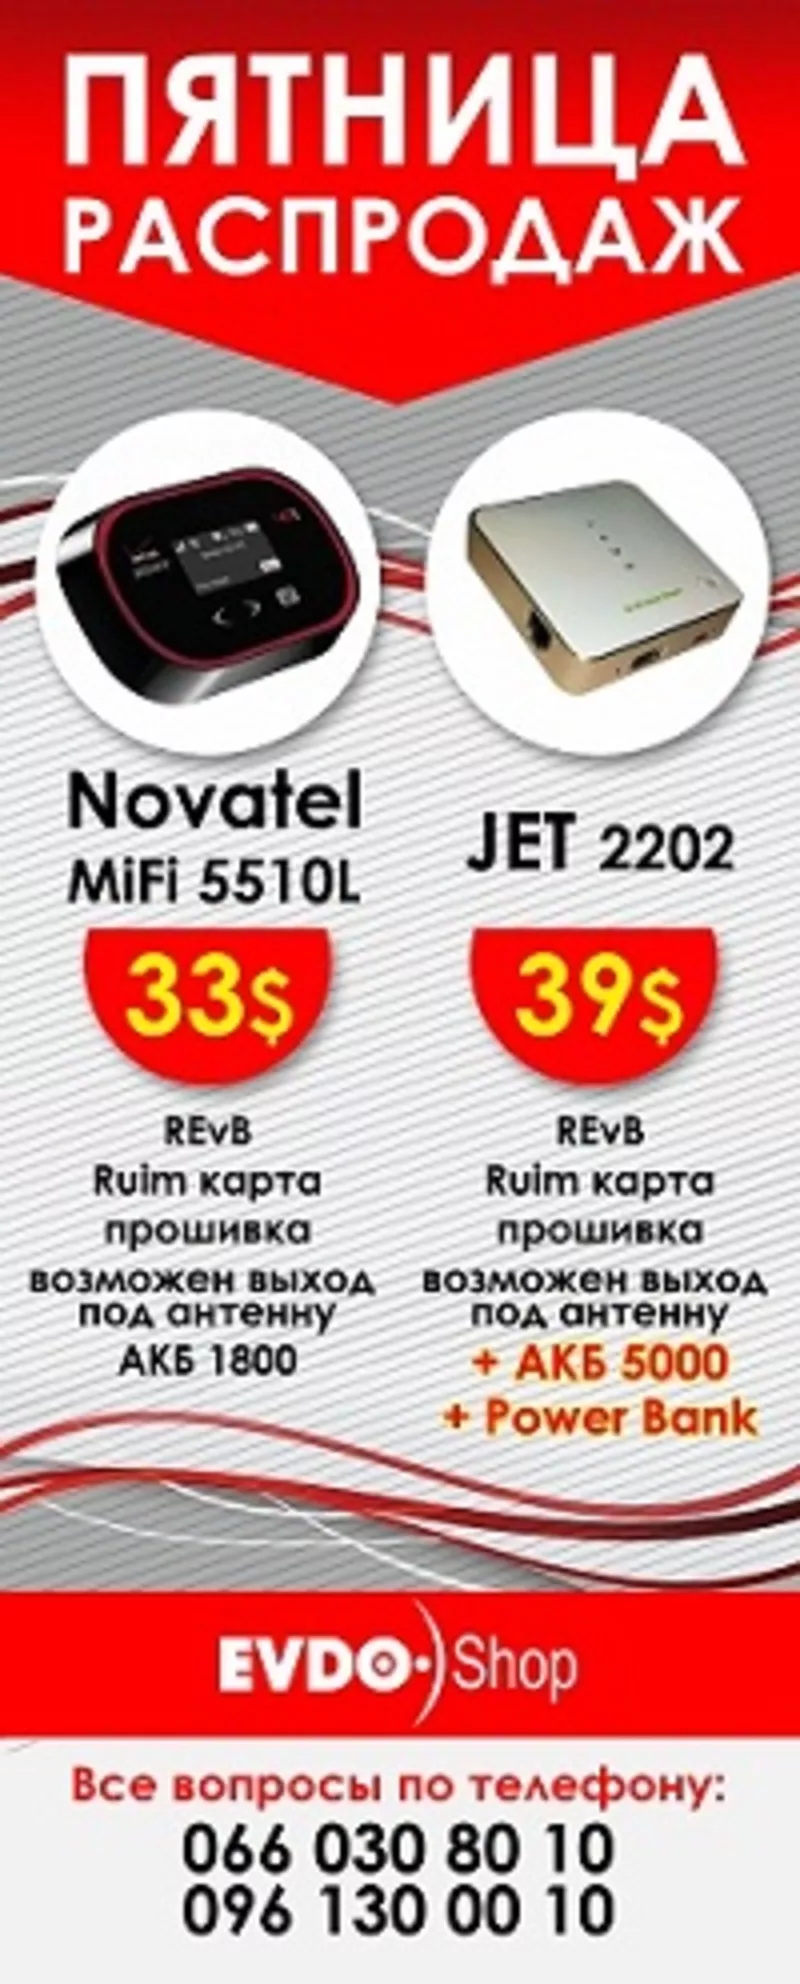 5510L mifi  стандарт (5510L novatel wireless)